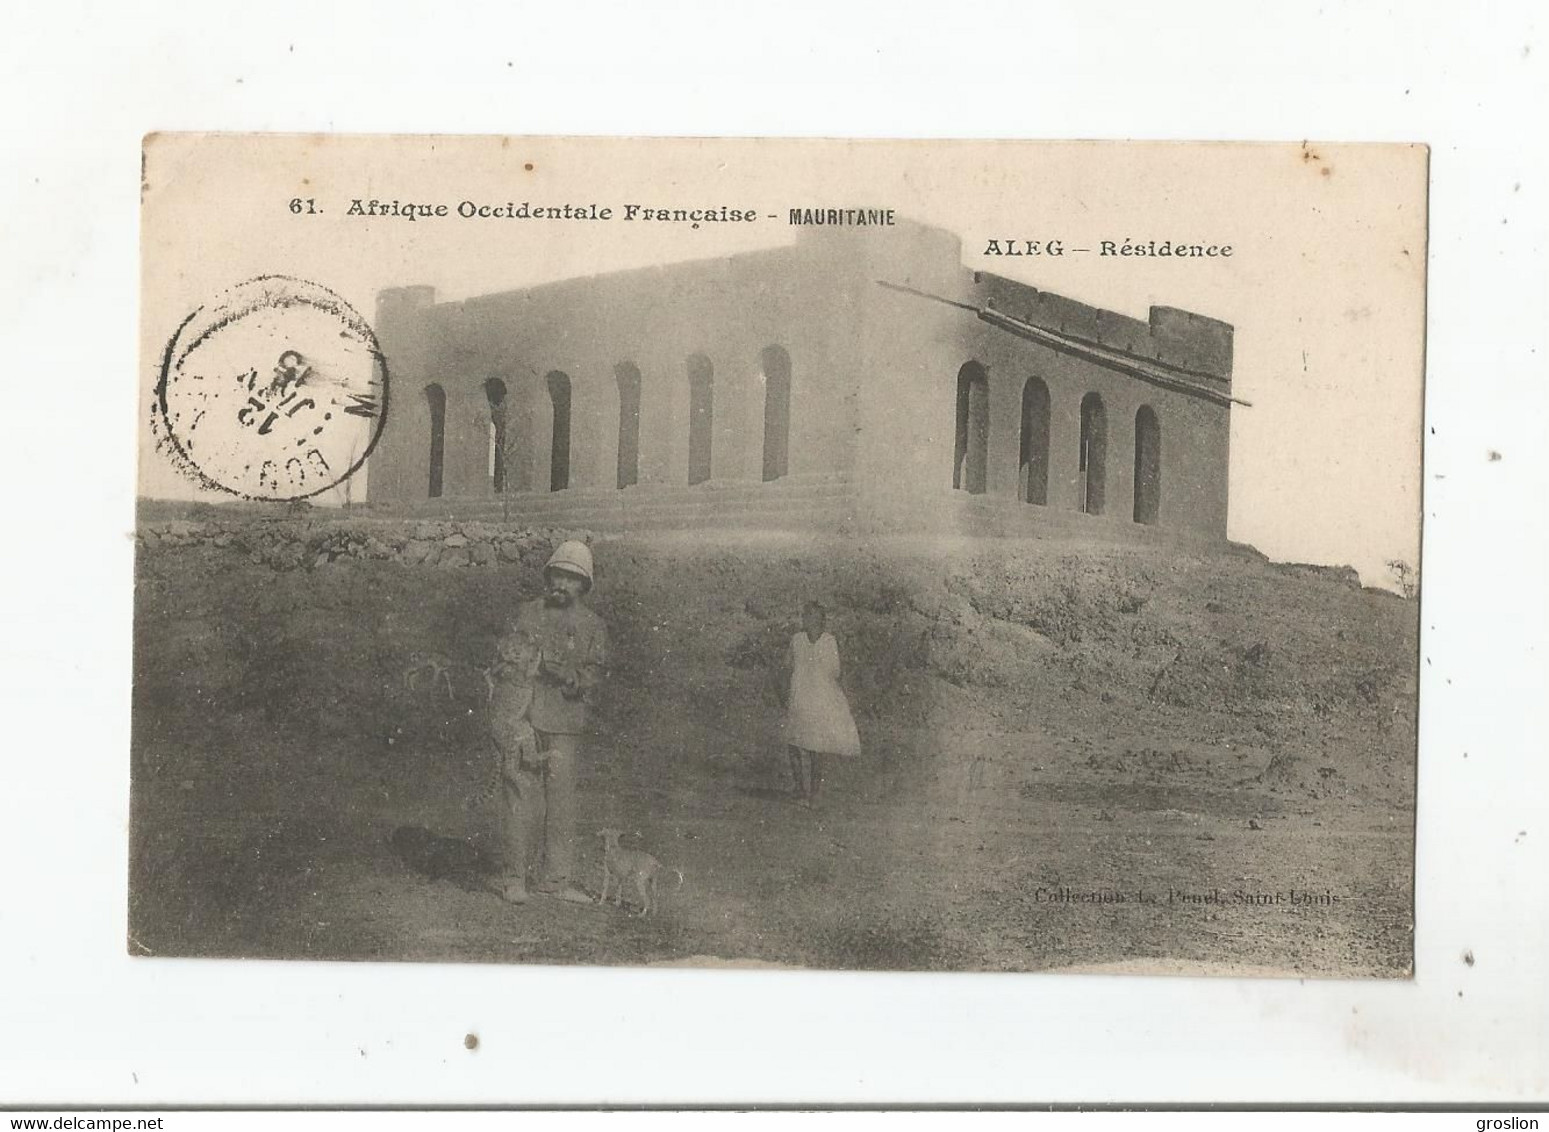 MAURITANIE (AFRIQUE OCCIDENTALE FRANCAISE) 61 ALEG RESIDENCE (PETITE ANIMATION) 1915 - Mauritania